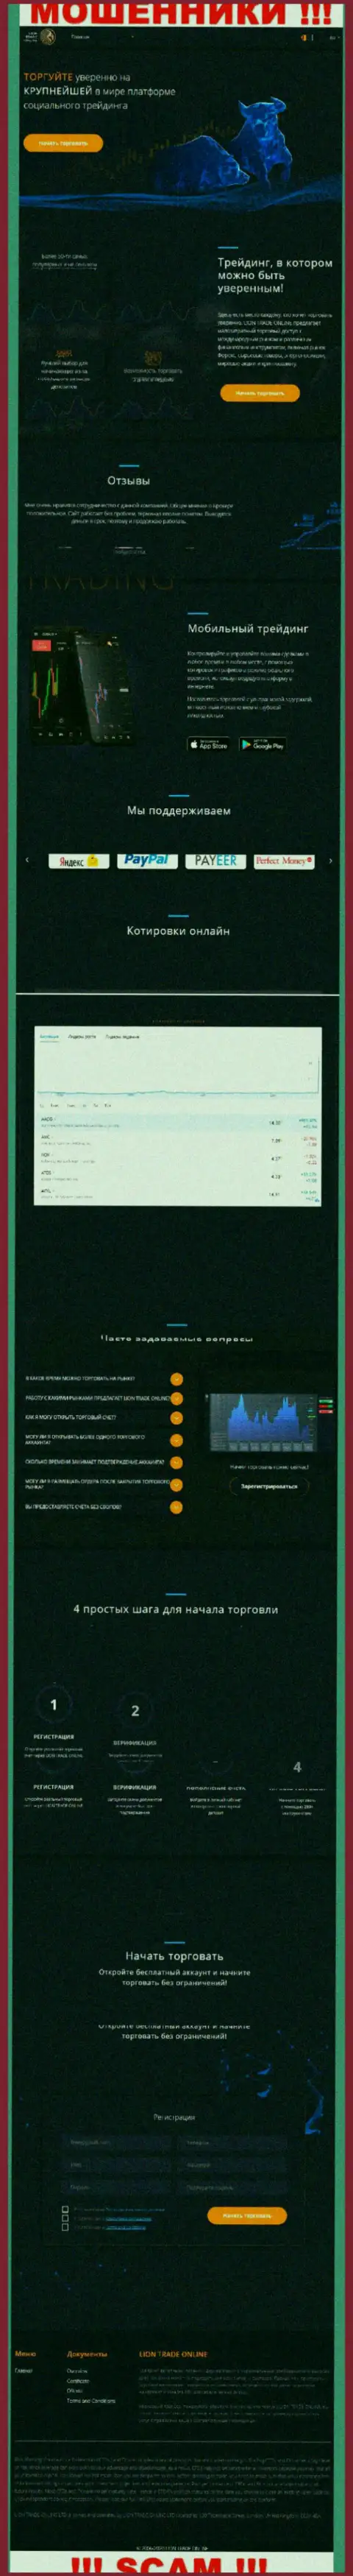 Сайт компании Лион Трейд, заполненный фейковой инфой